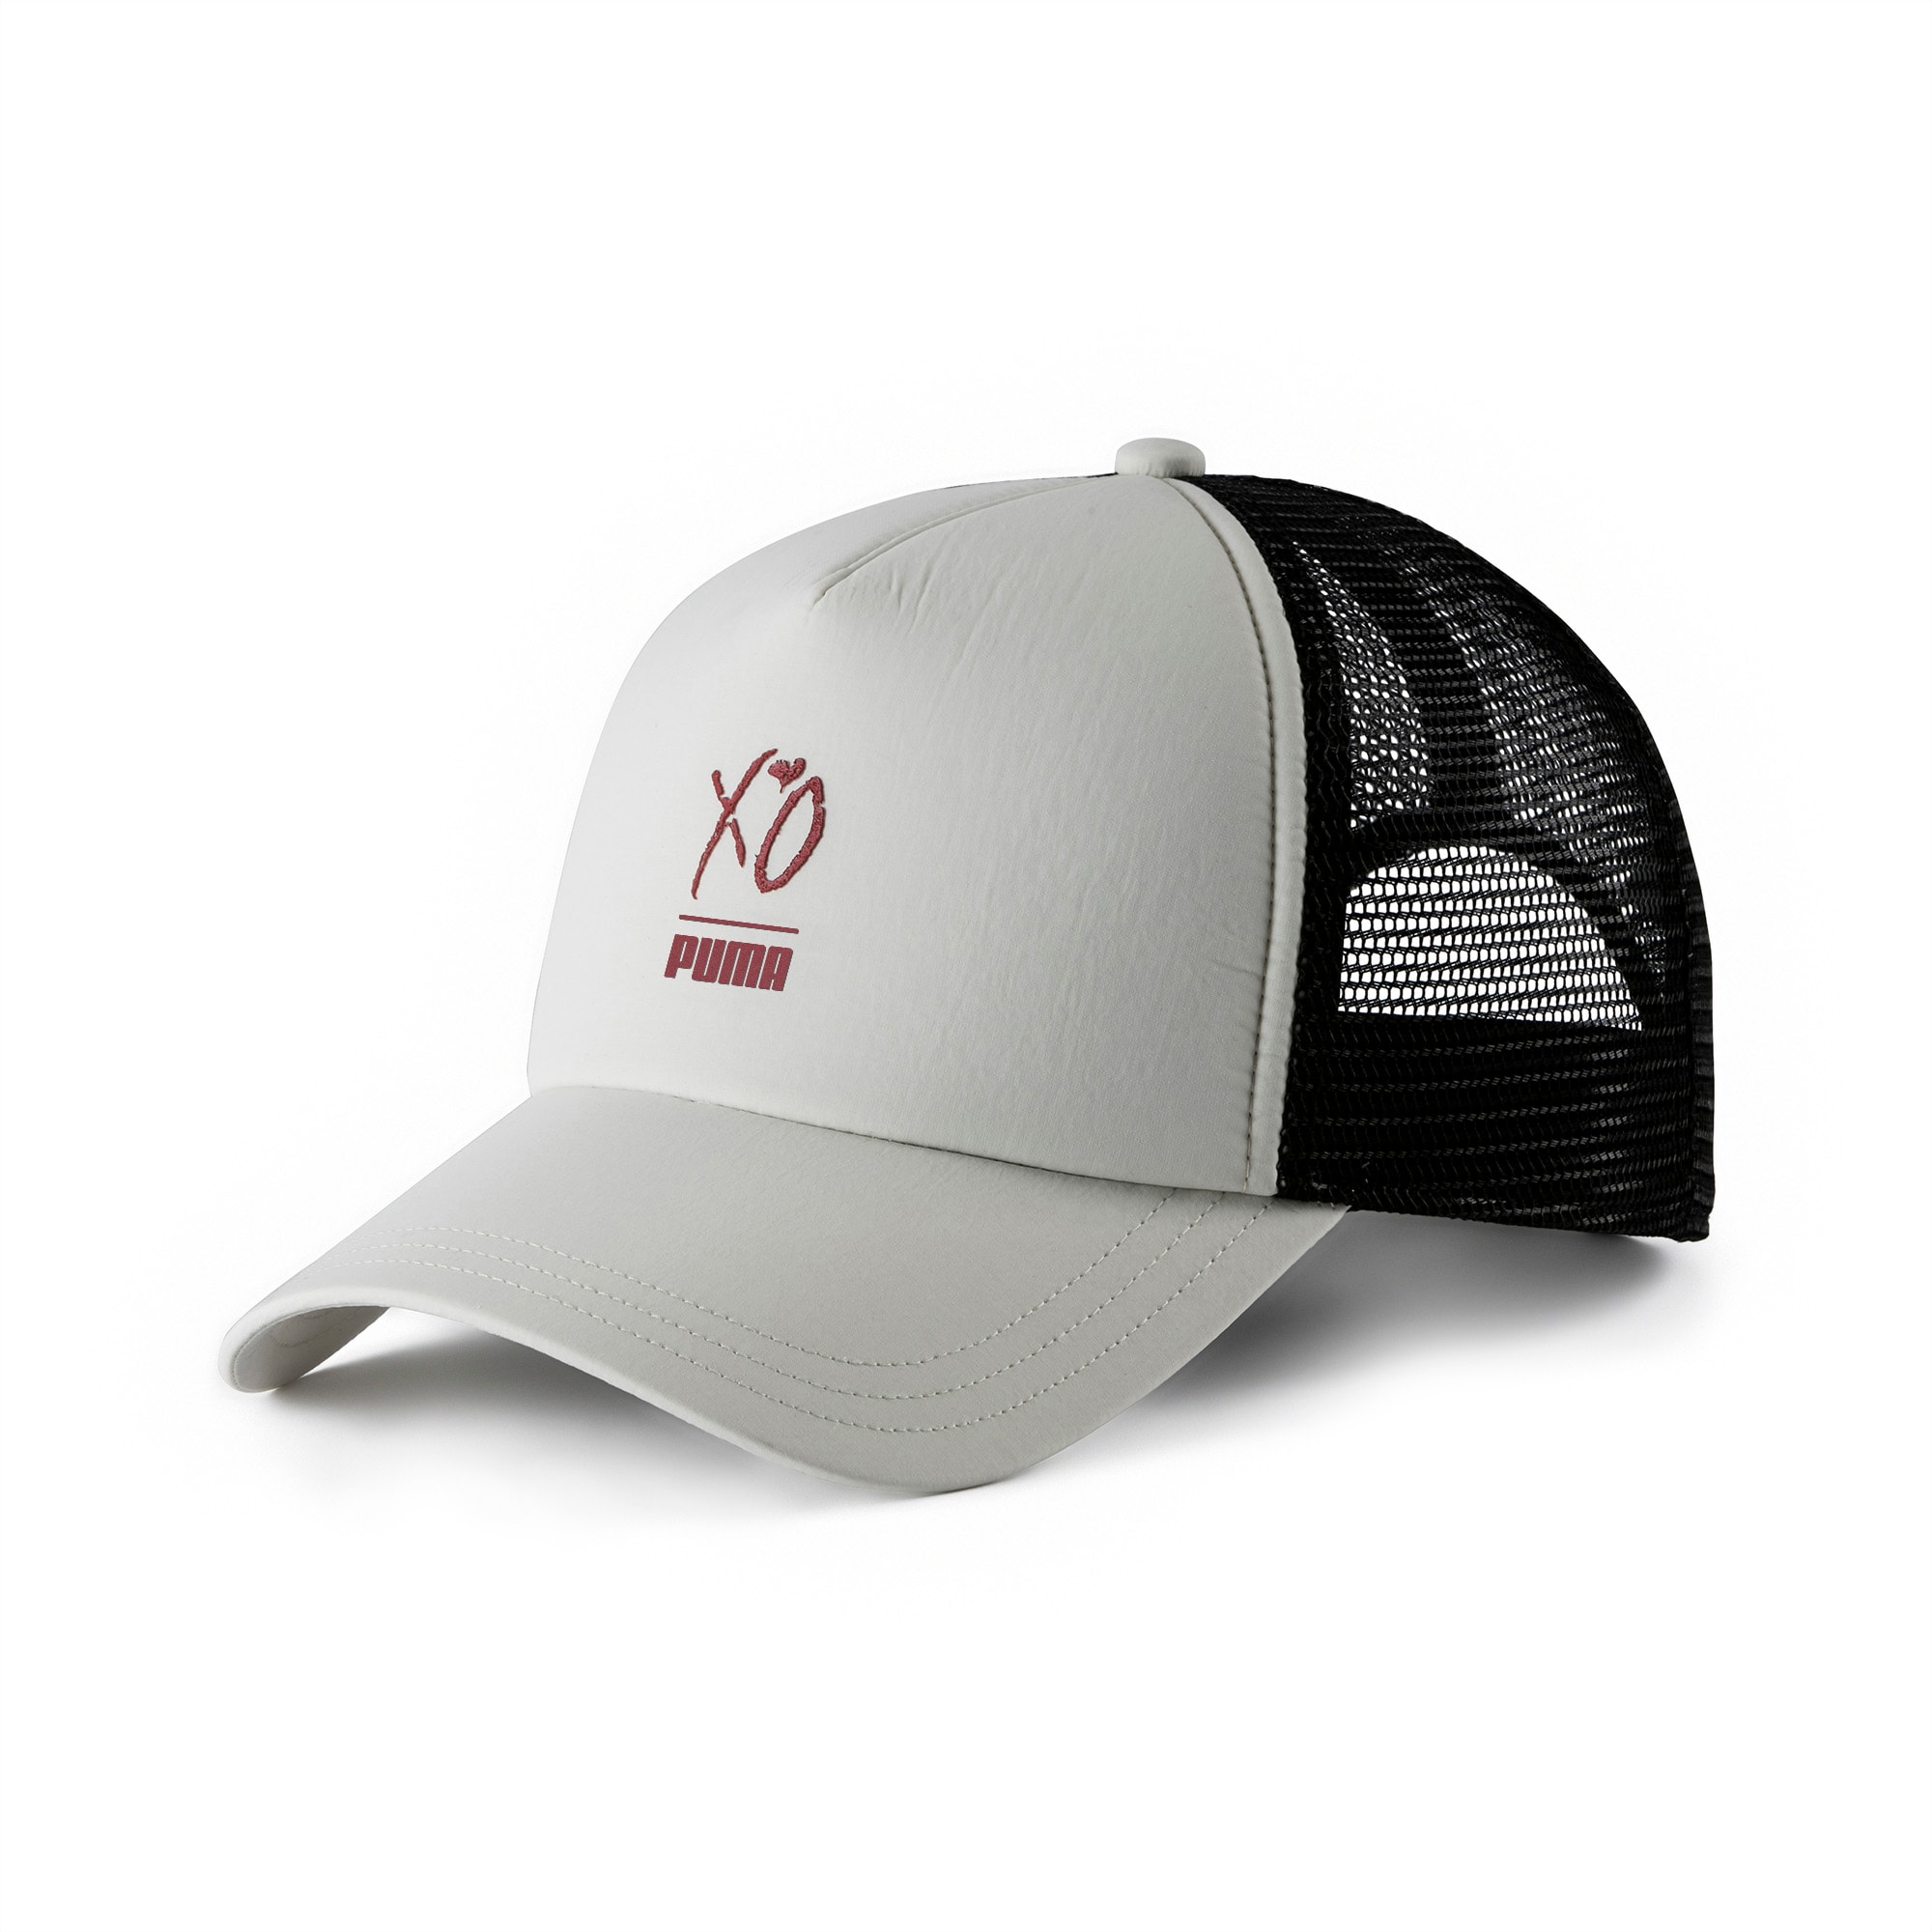 PUMA x XO Snapback Trucker Hat | PUMA US